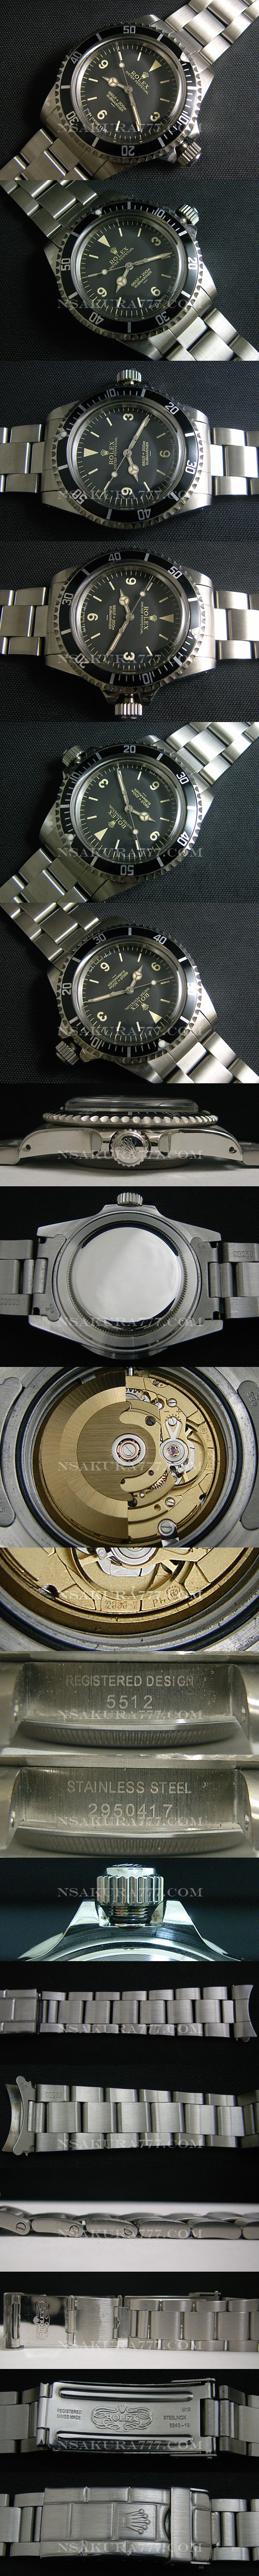 レプリカ時計 ロレックス サブマリーナ 新開発自動巻廉価版2836-2ムーブメント搭載！ - ウインドウを閉じる